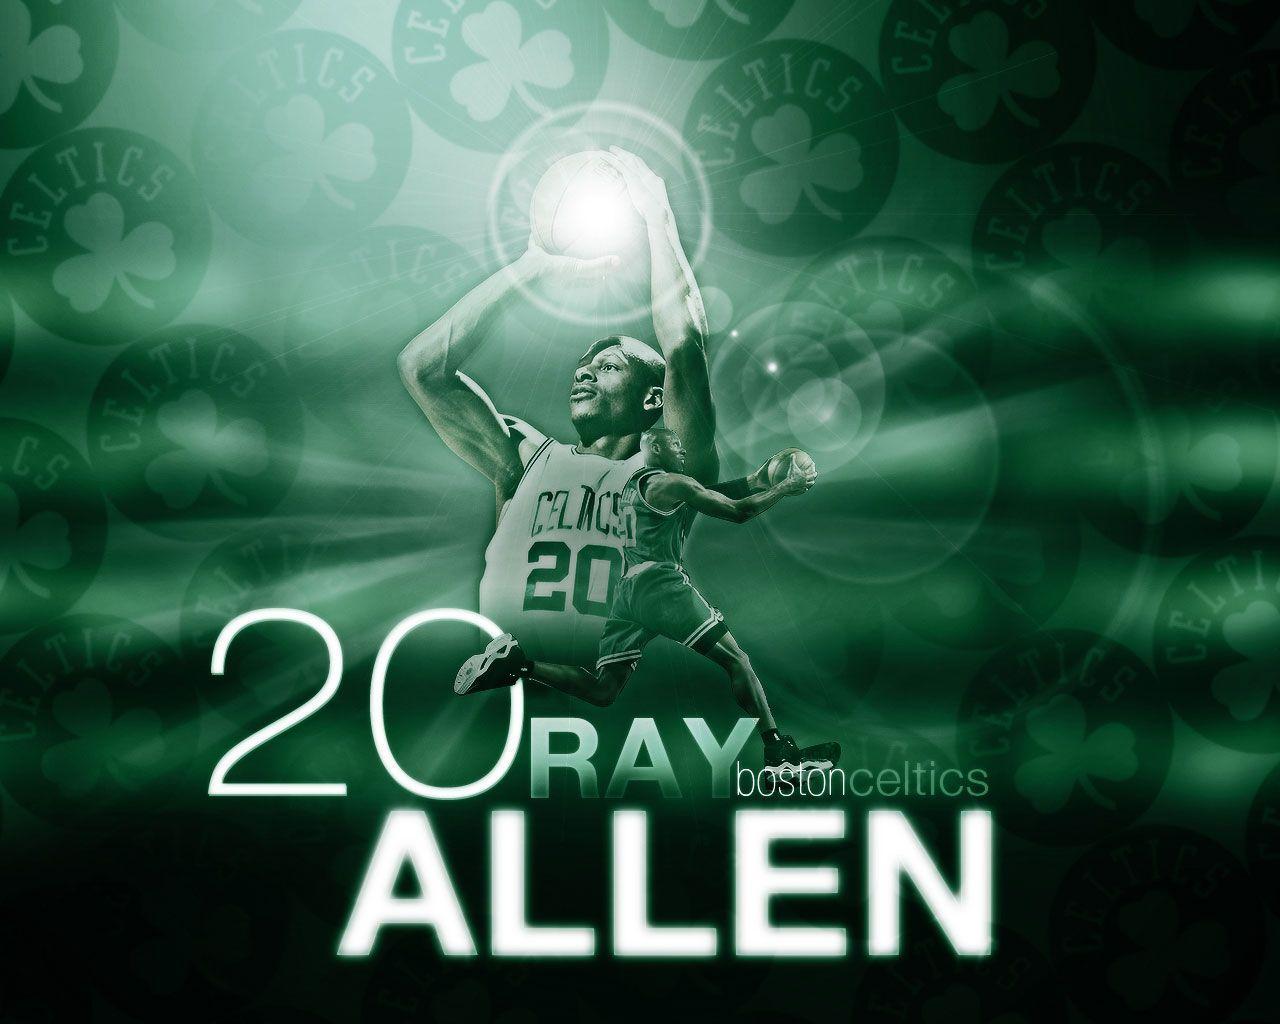 Ray Allen Celtics No. 20 Wallpaper. Basketball Wallpaper at